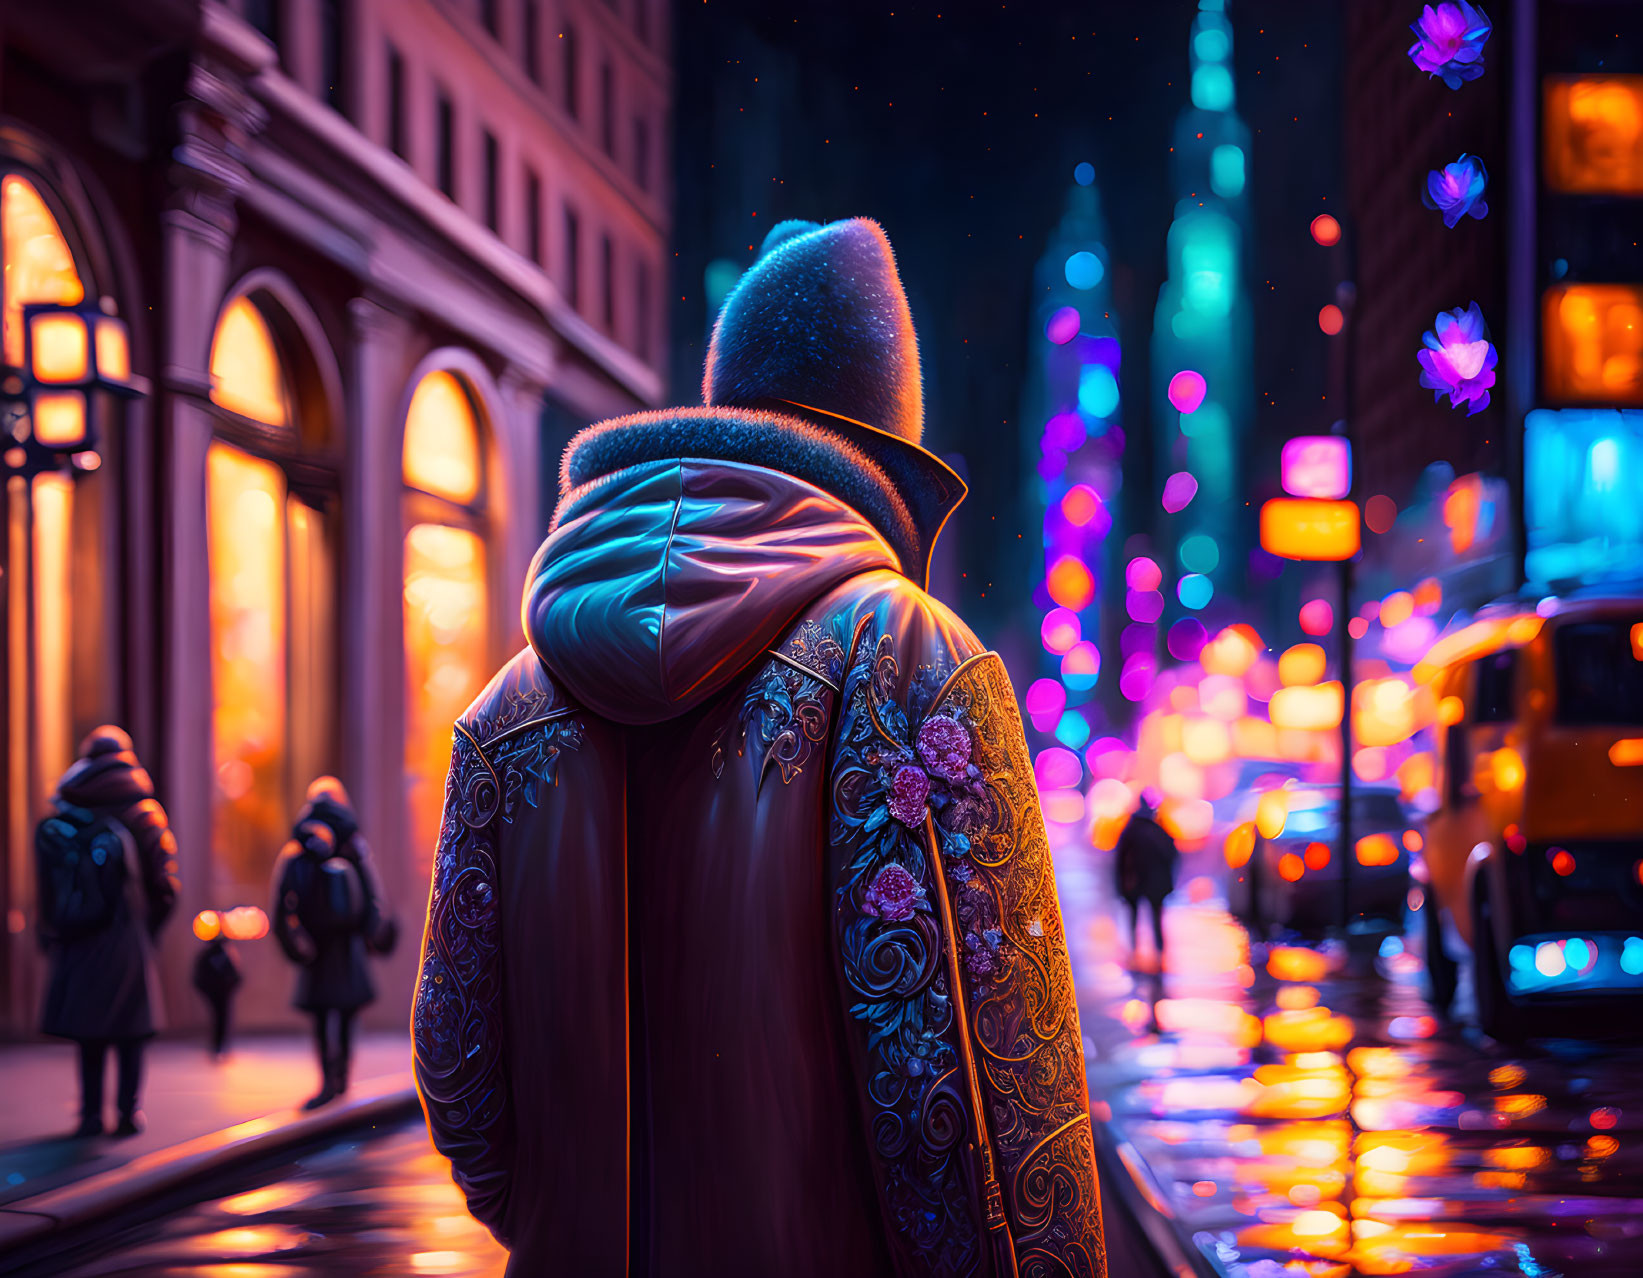 רחובות ניו יורק בלילה